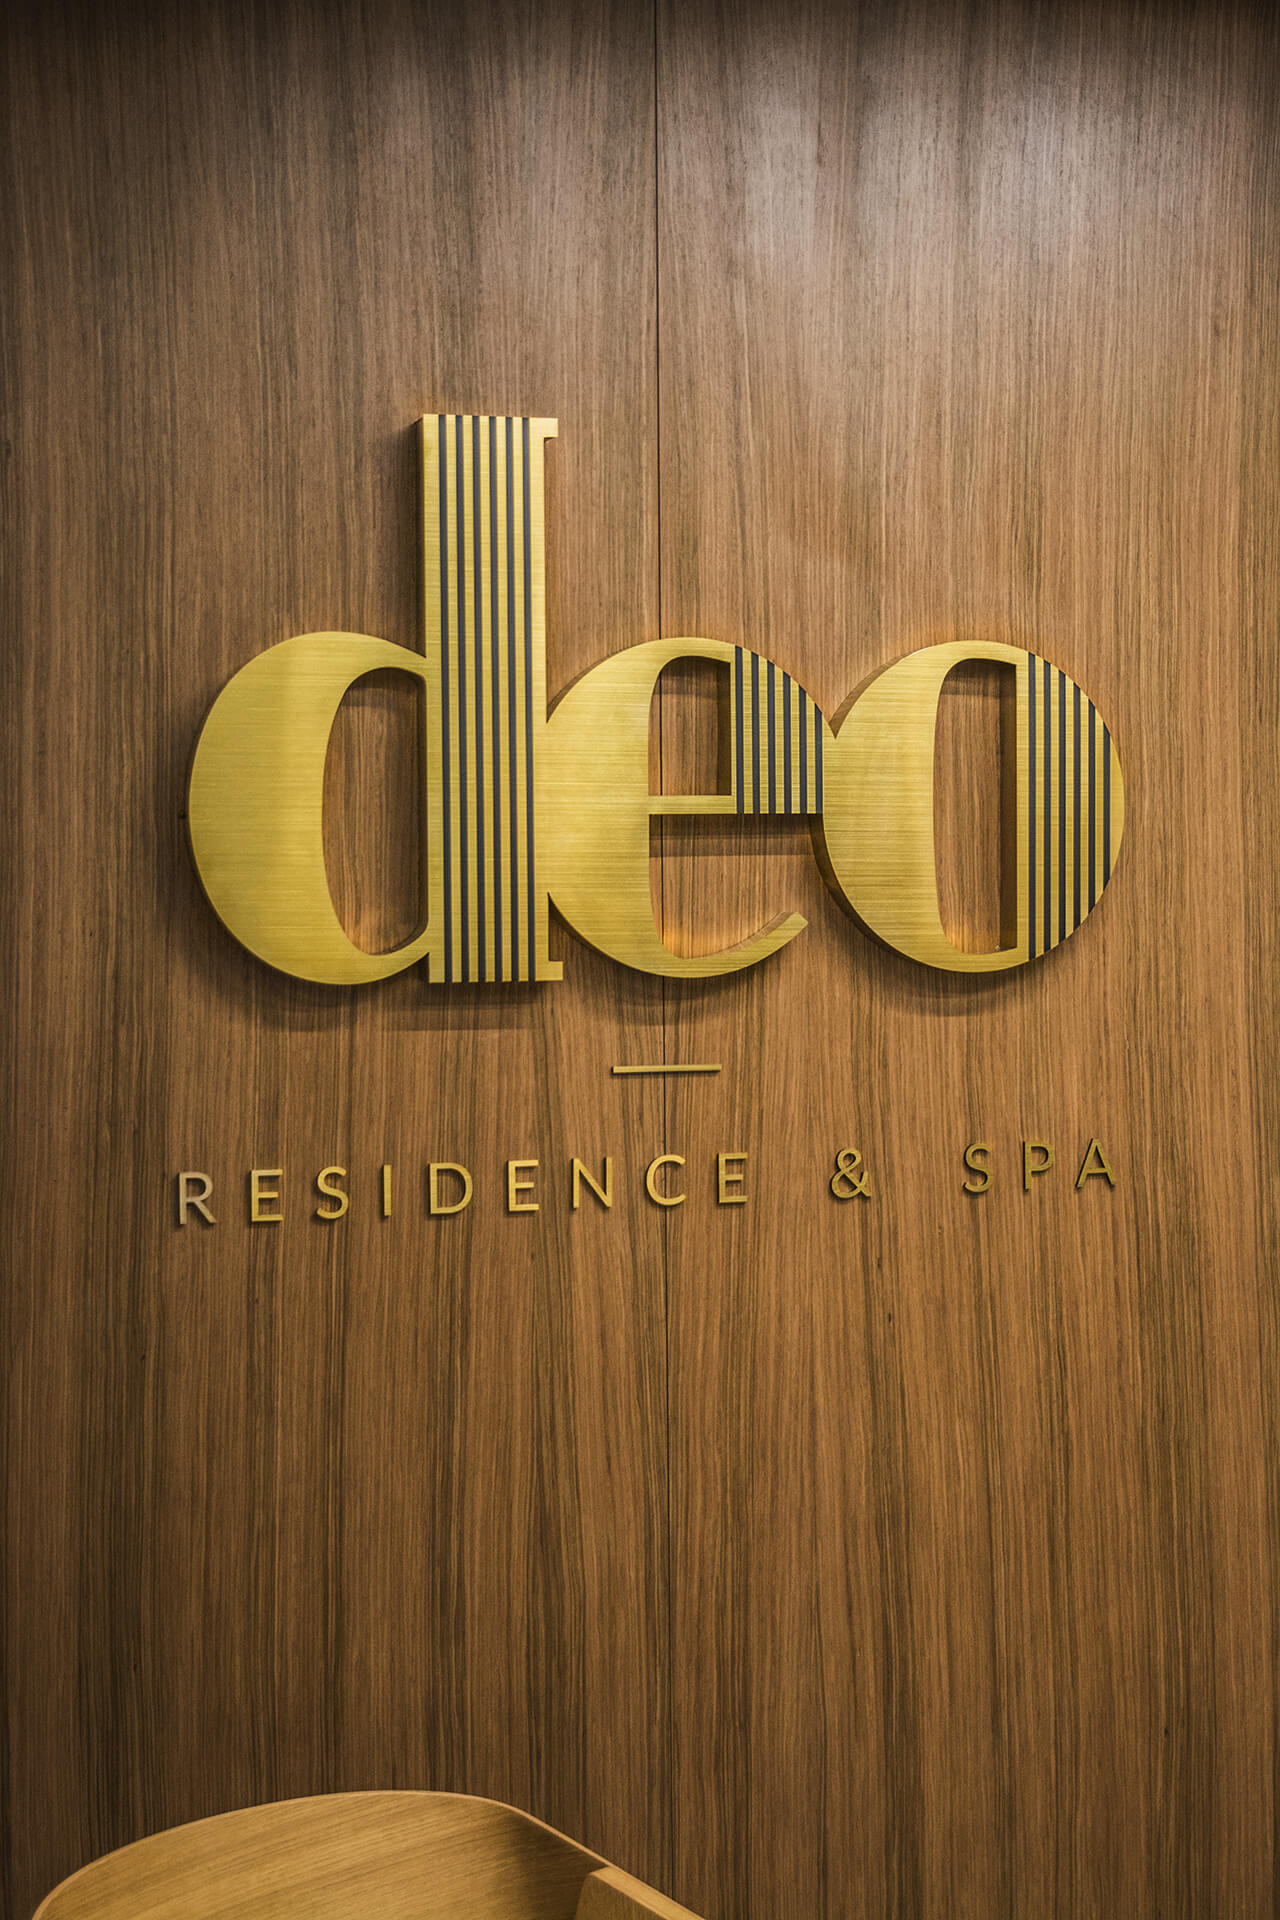 deo residence deo hotel spa - deo-residencia-característica-de-acero-bruñido-sobre-la-entrada-en-el-edificio-de-oficina-característica-de-altura-montada-en-la-pared-característica-en-capital-característica-en-el-escritorio-logo-gdansk